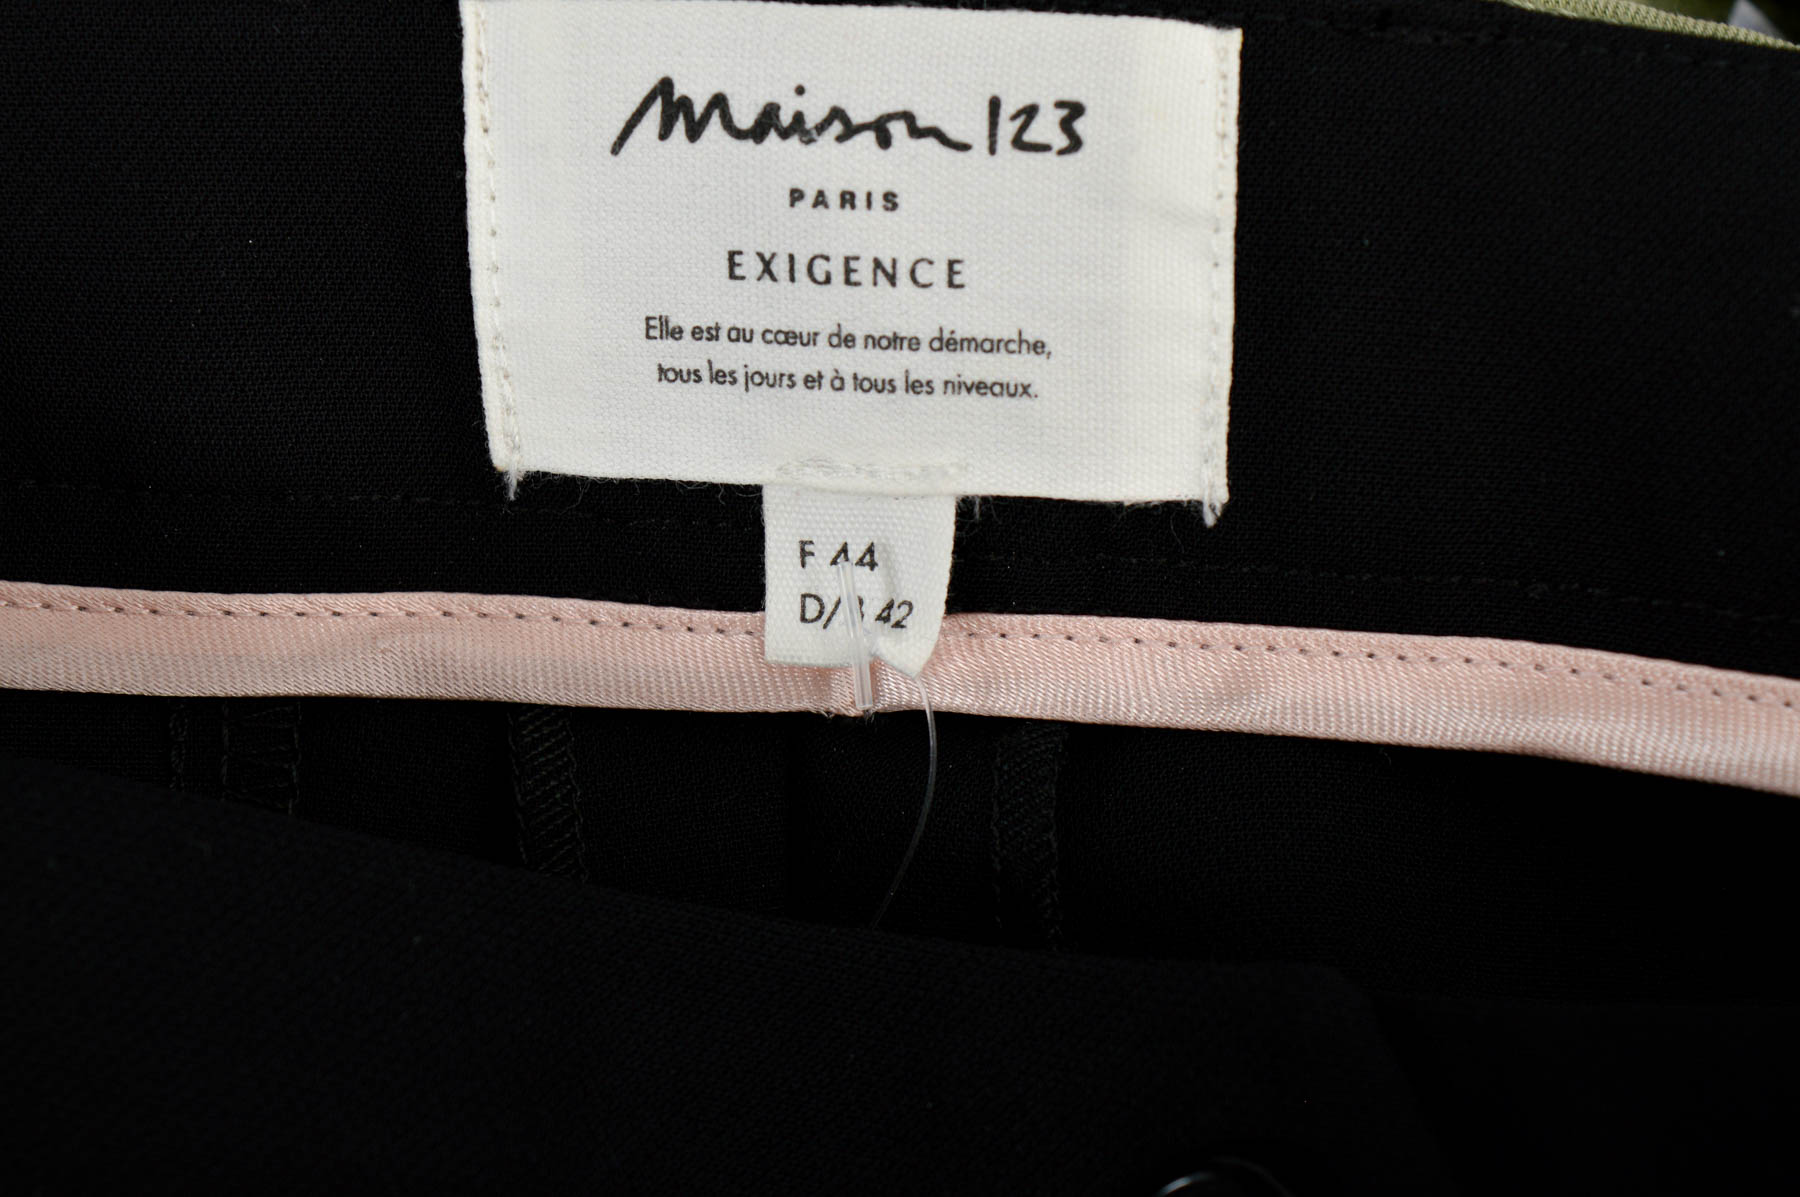 Γυναικεία παντελόνια - Maison 123 - 2